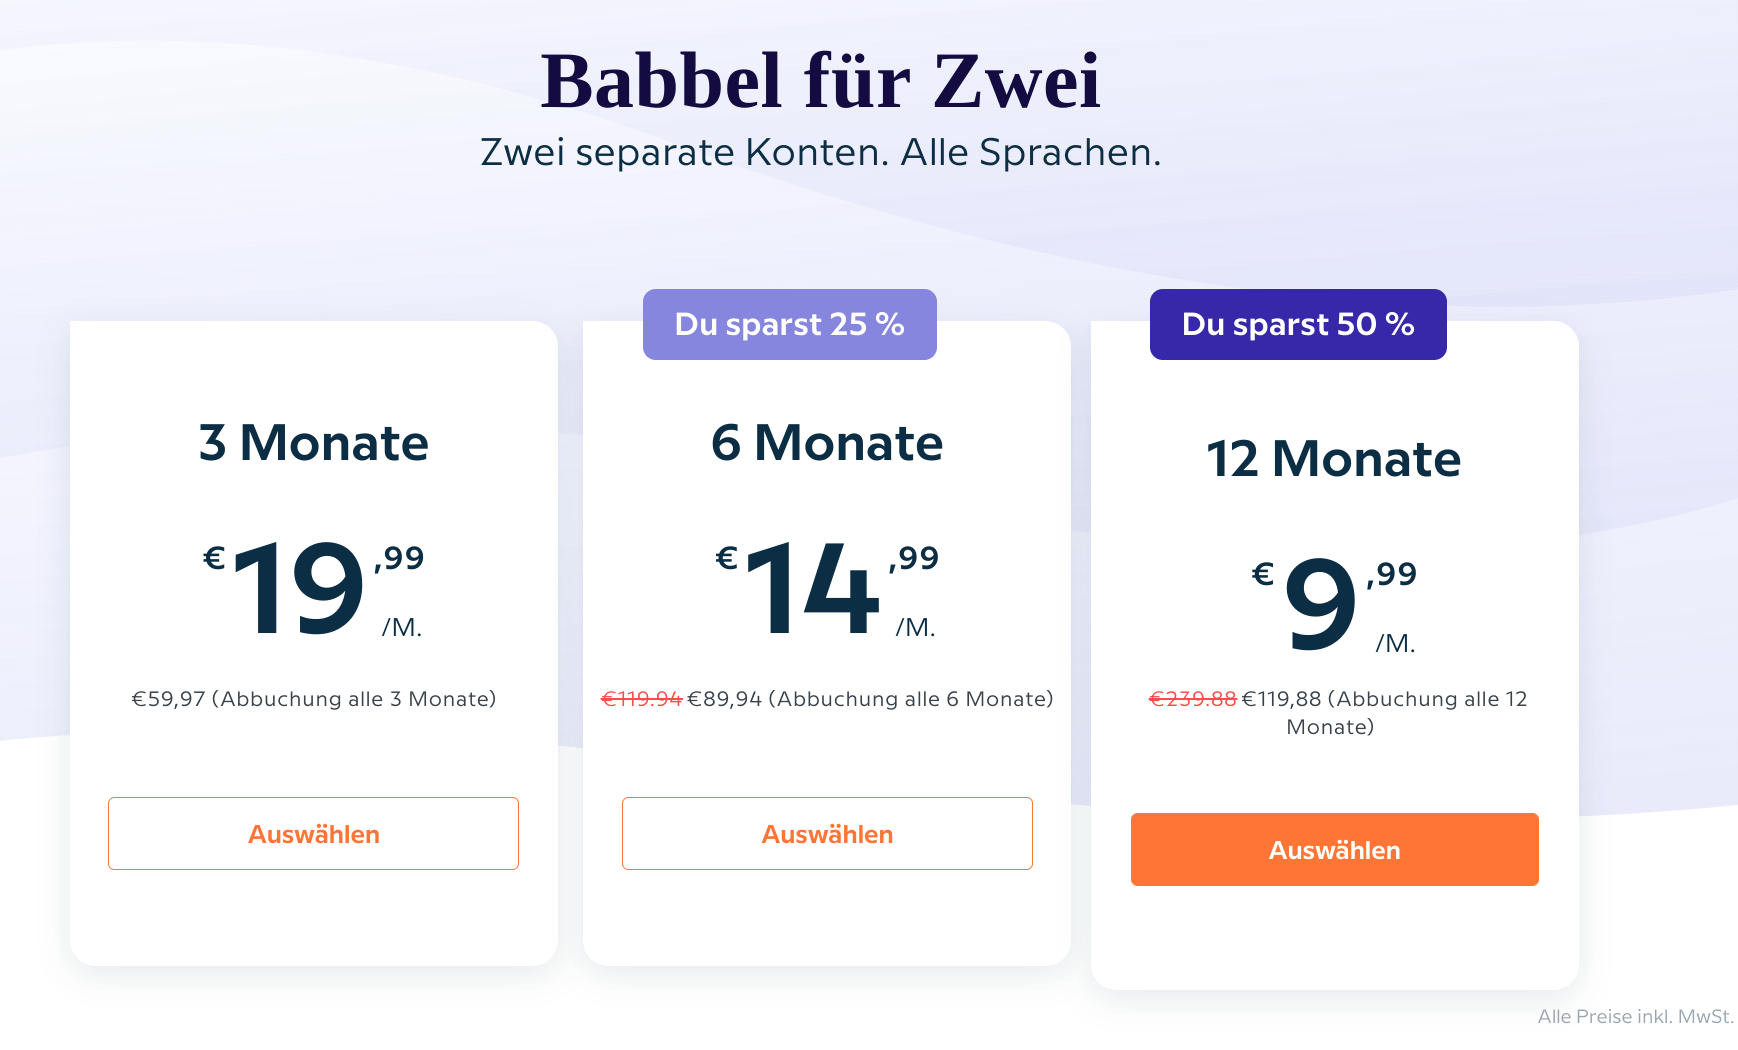 Übersicht der Kosten für Babbel für Zwei